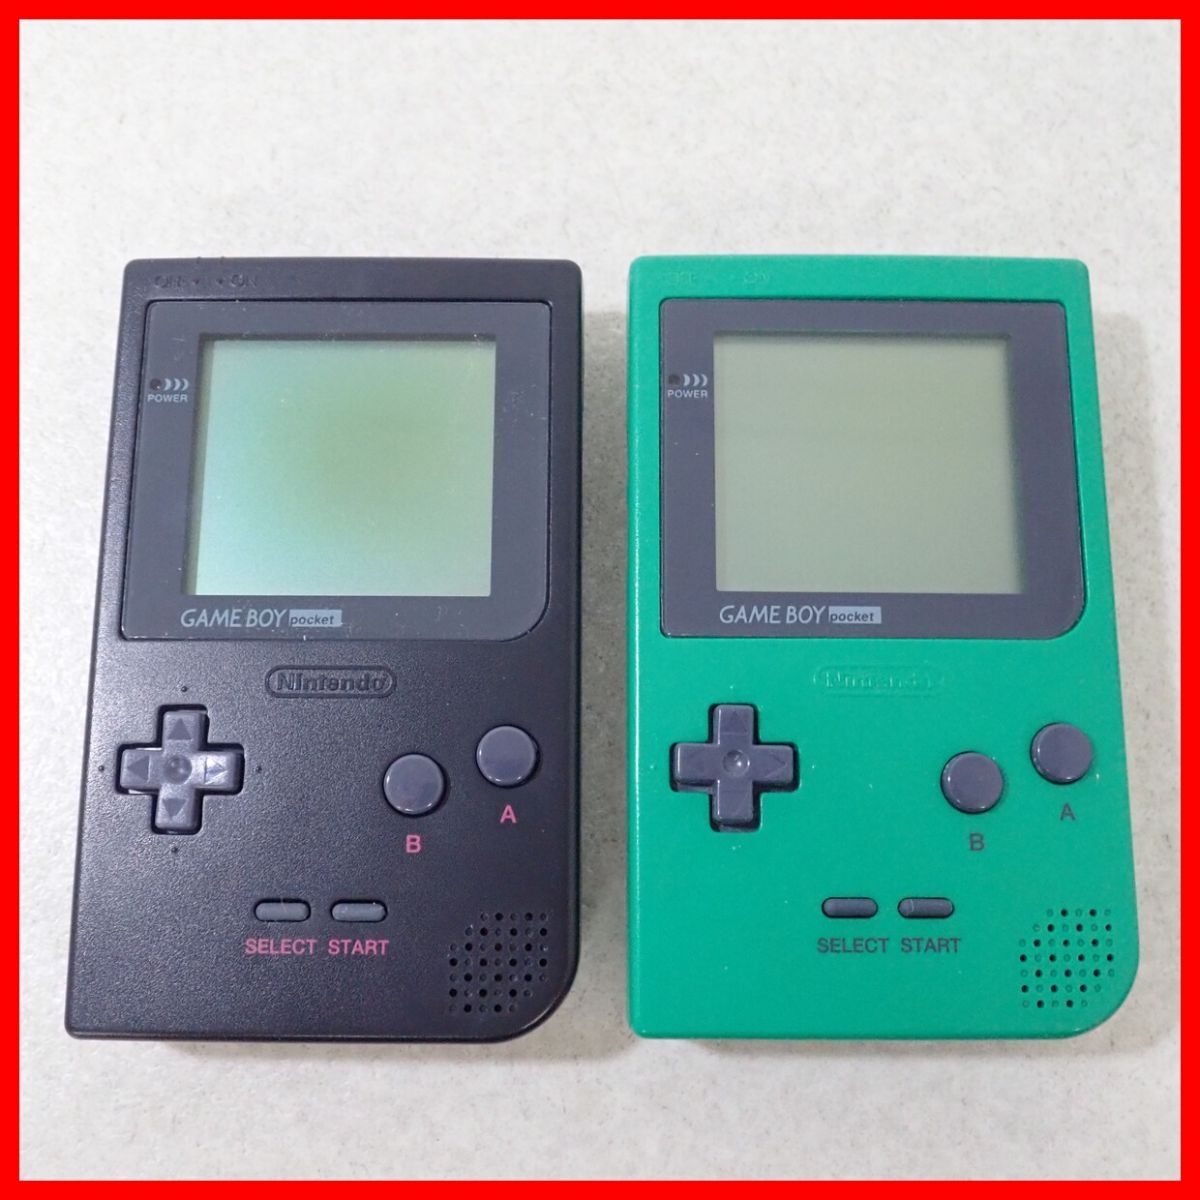 GBP Game Boy карман корпус MGB-001 зеленый / черный совместно 2 шт. комплект Nintendo nintendo коробка мнение есть с дефектом товар [10